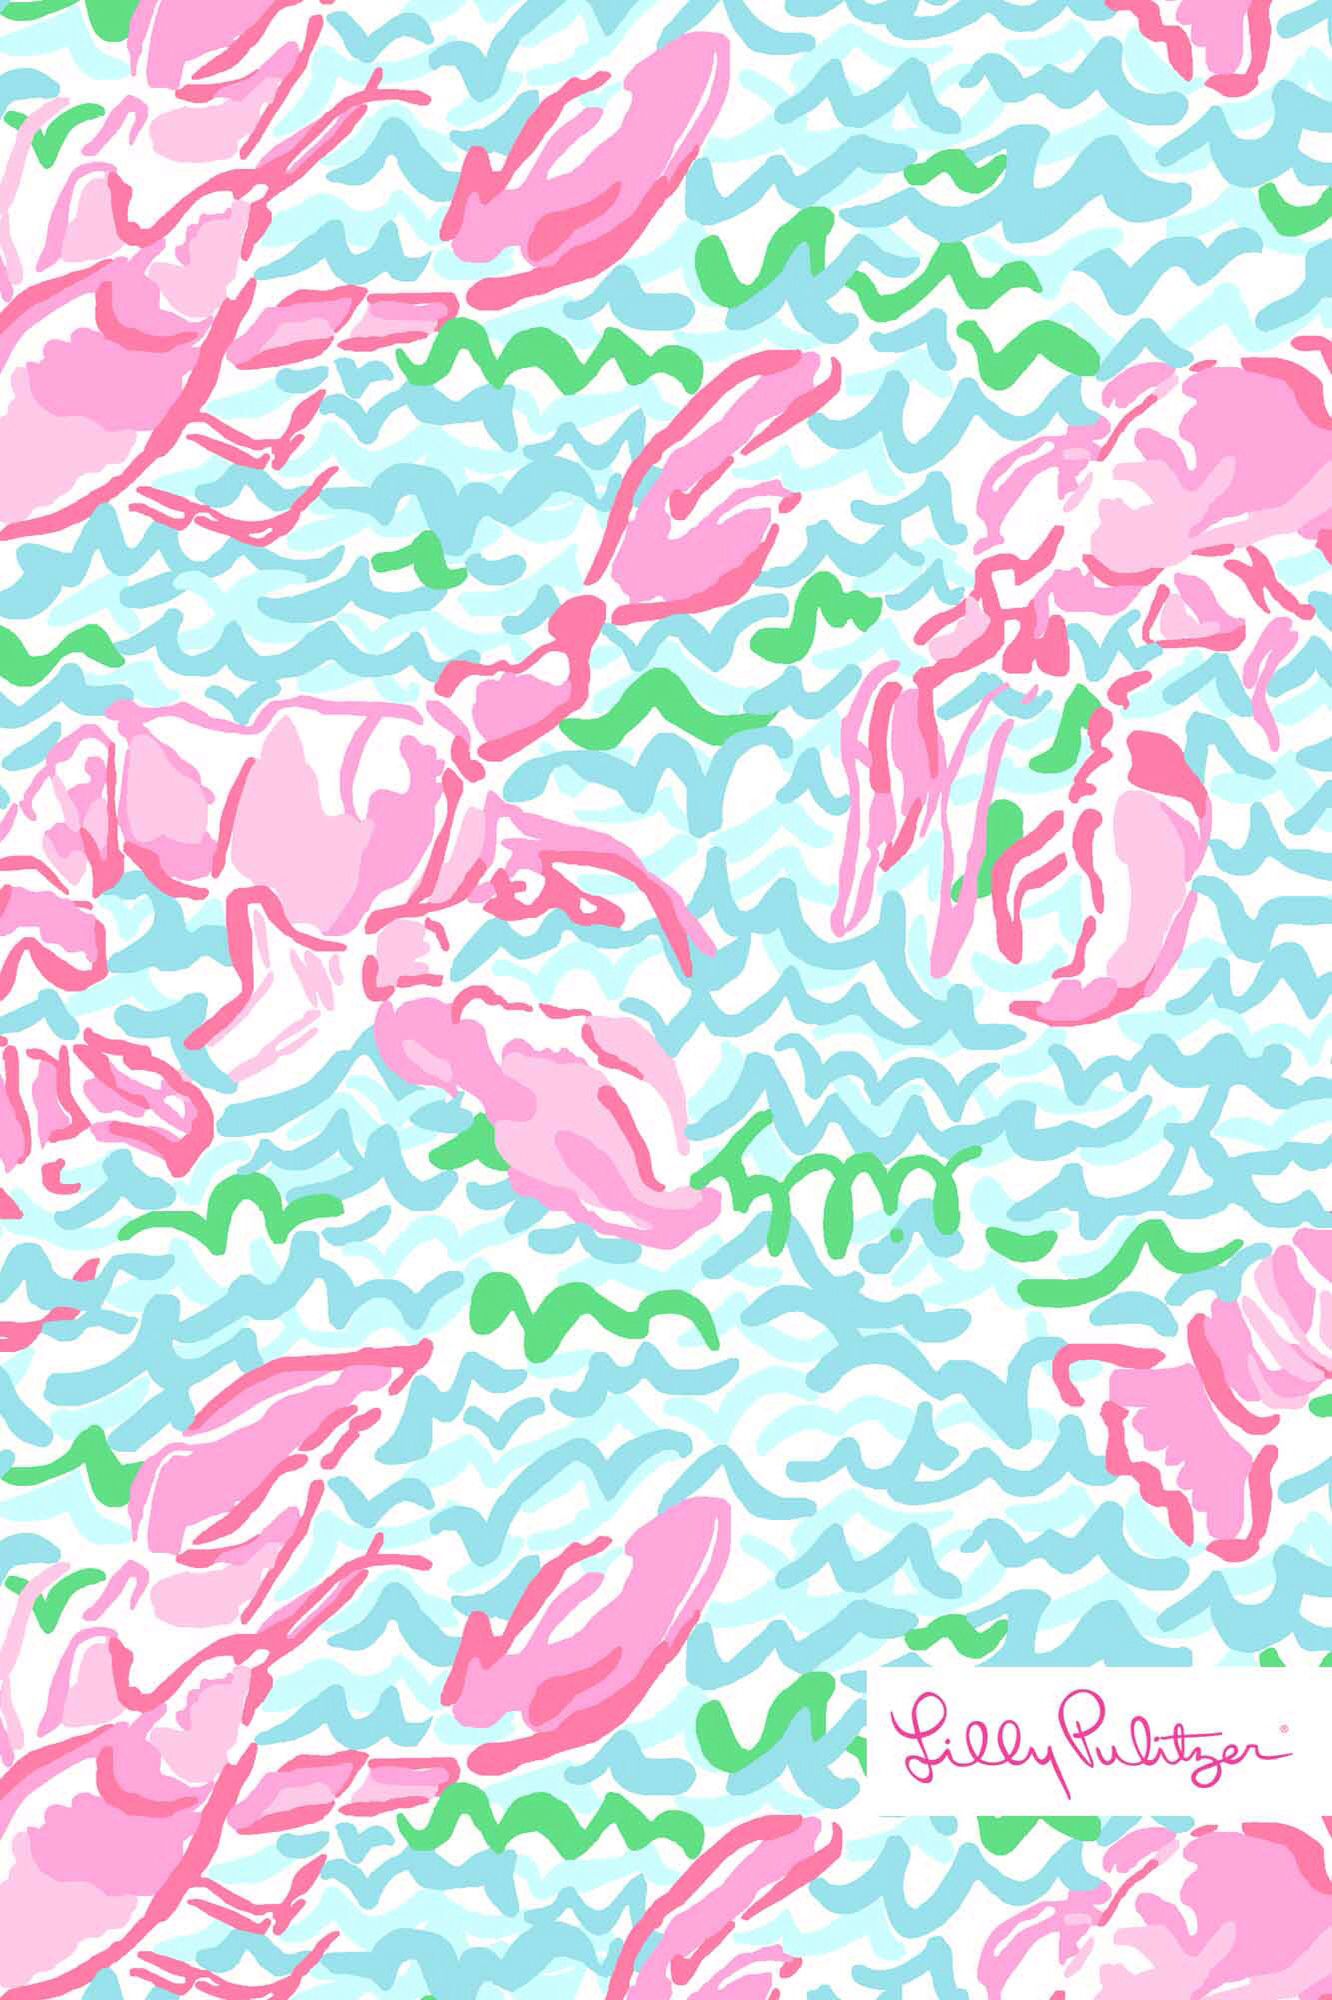 リリー・ピューリッツァーiphoneの壁紙,ピンク,パターン,包装紙,設計,繊維